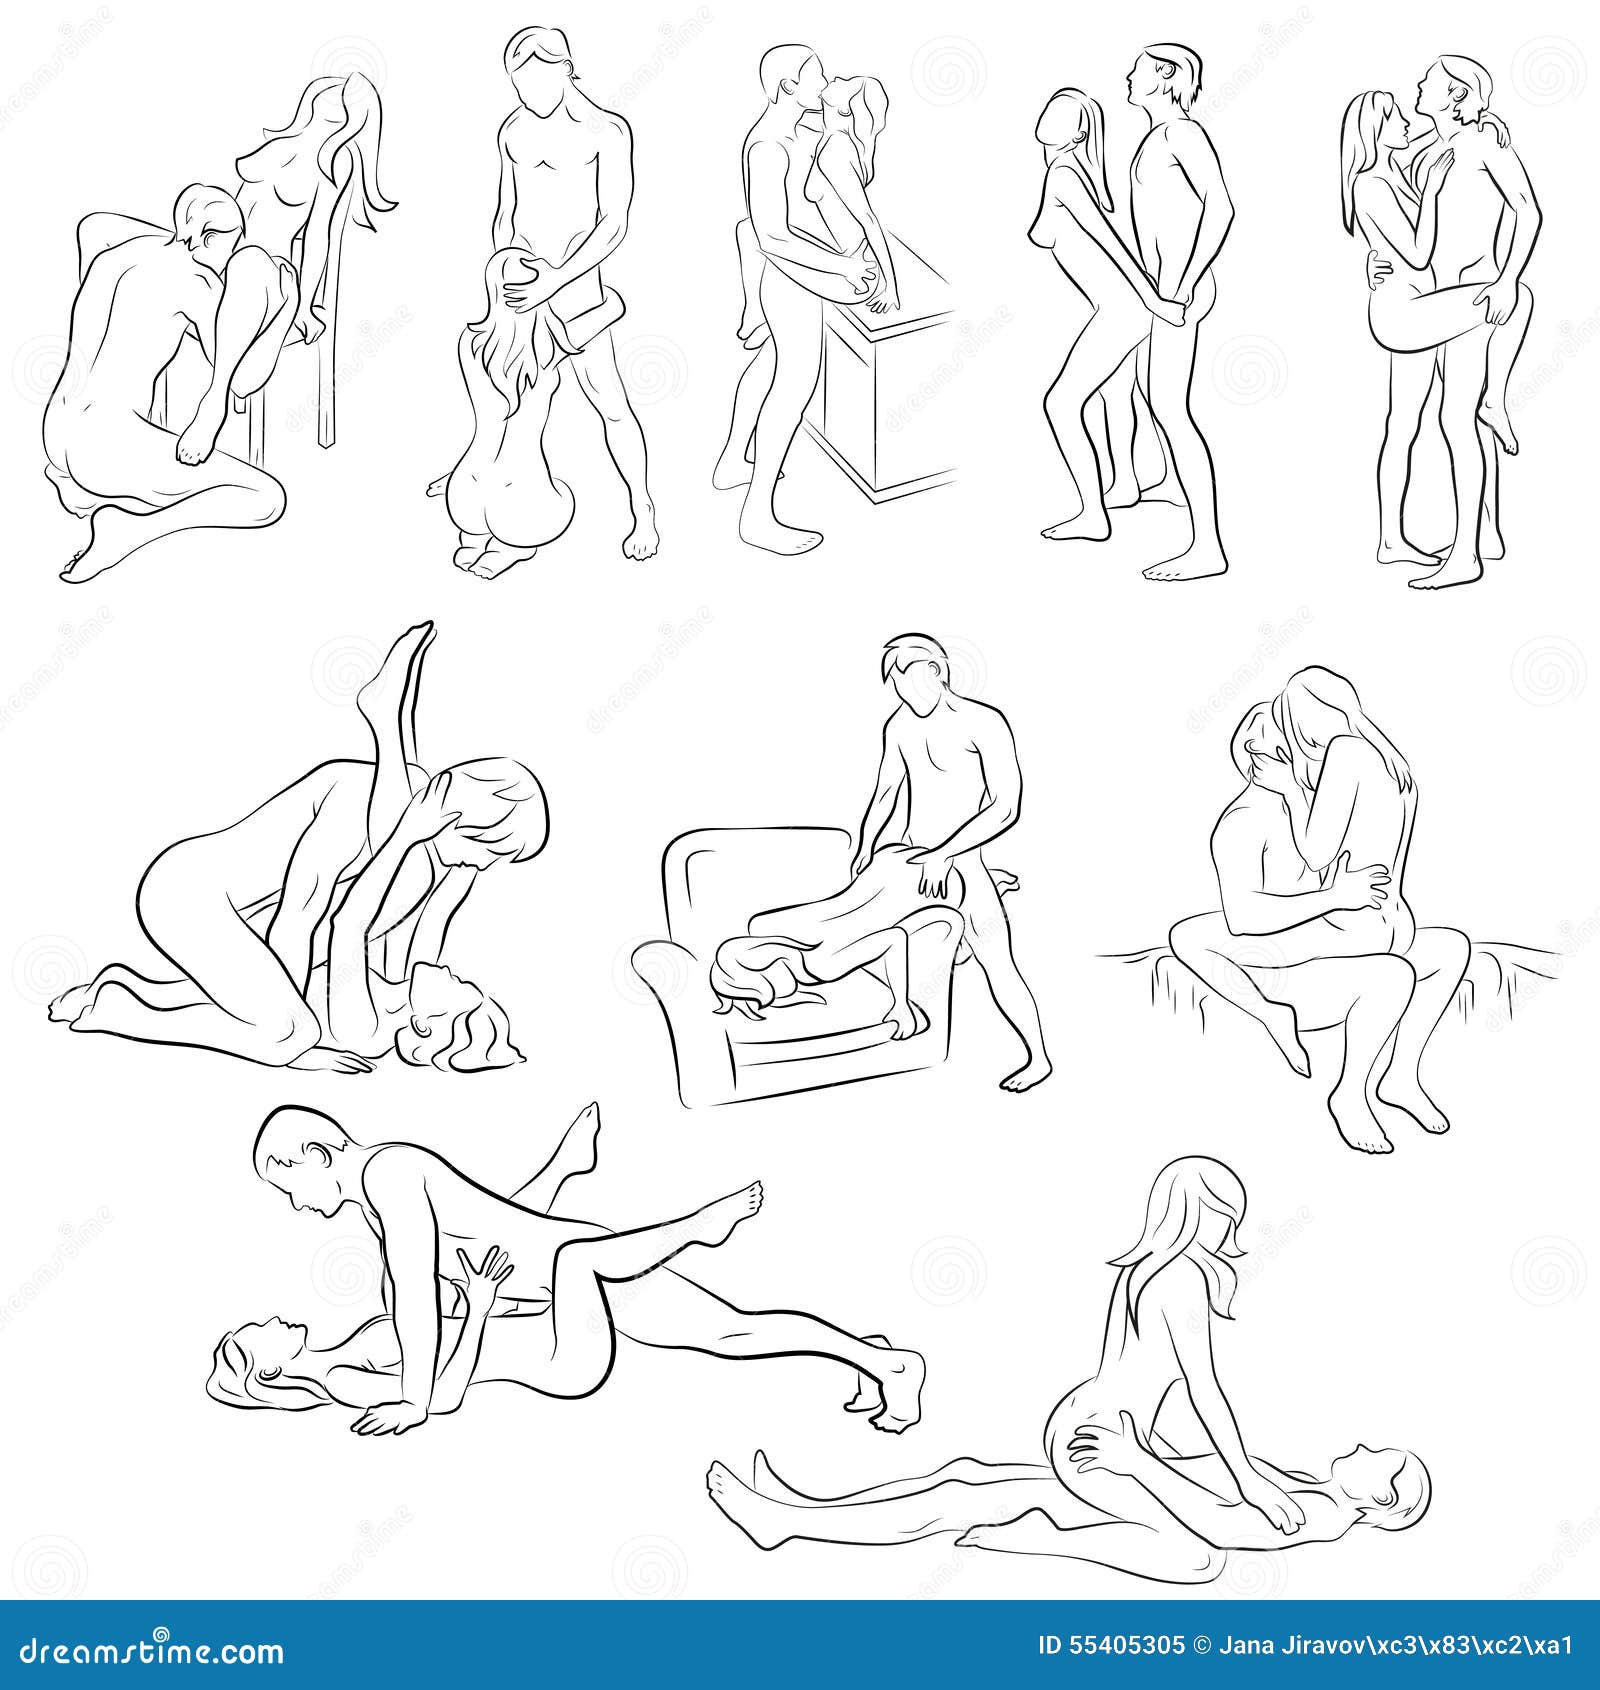 Desenhos de posições sexuais